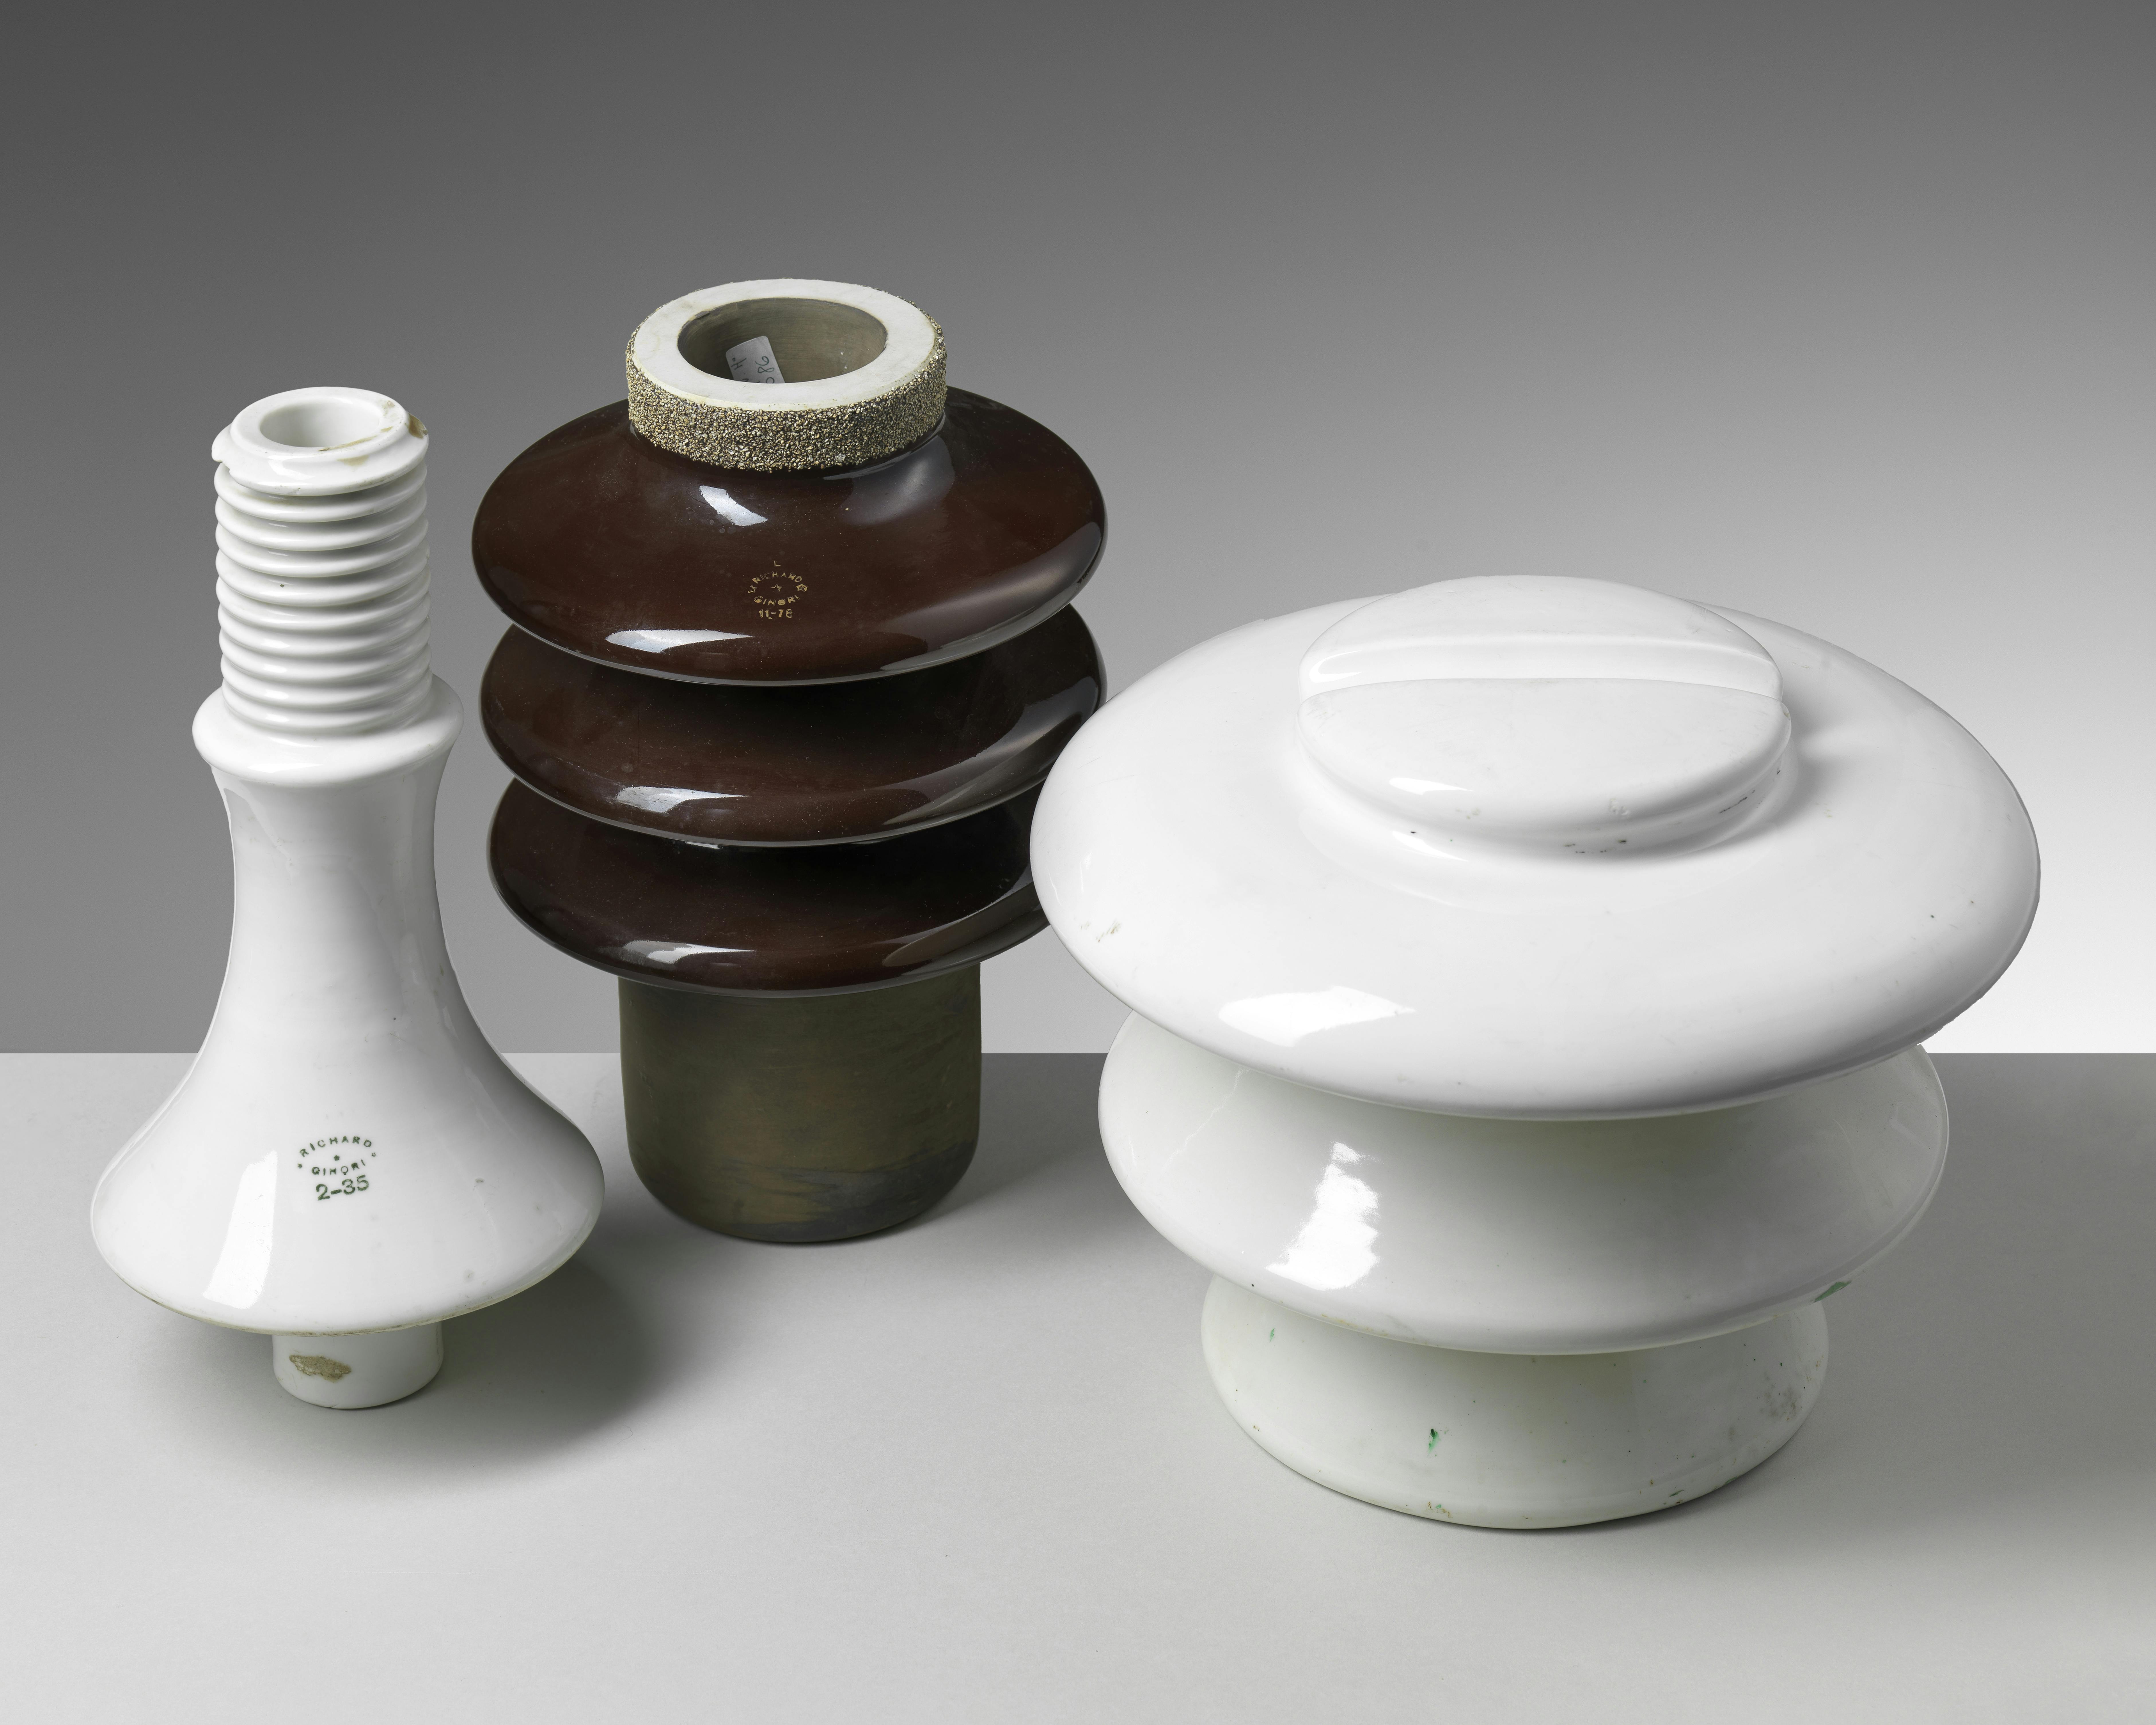 Tre isolatori in ceramica, due bianchi e uno bruno, di diverse forme e dimensioni.